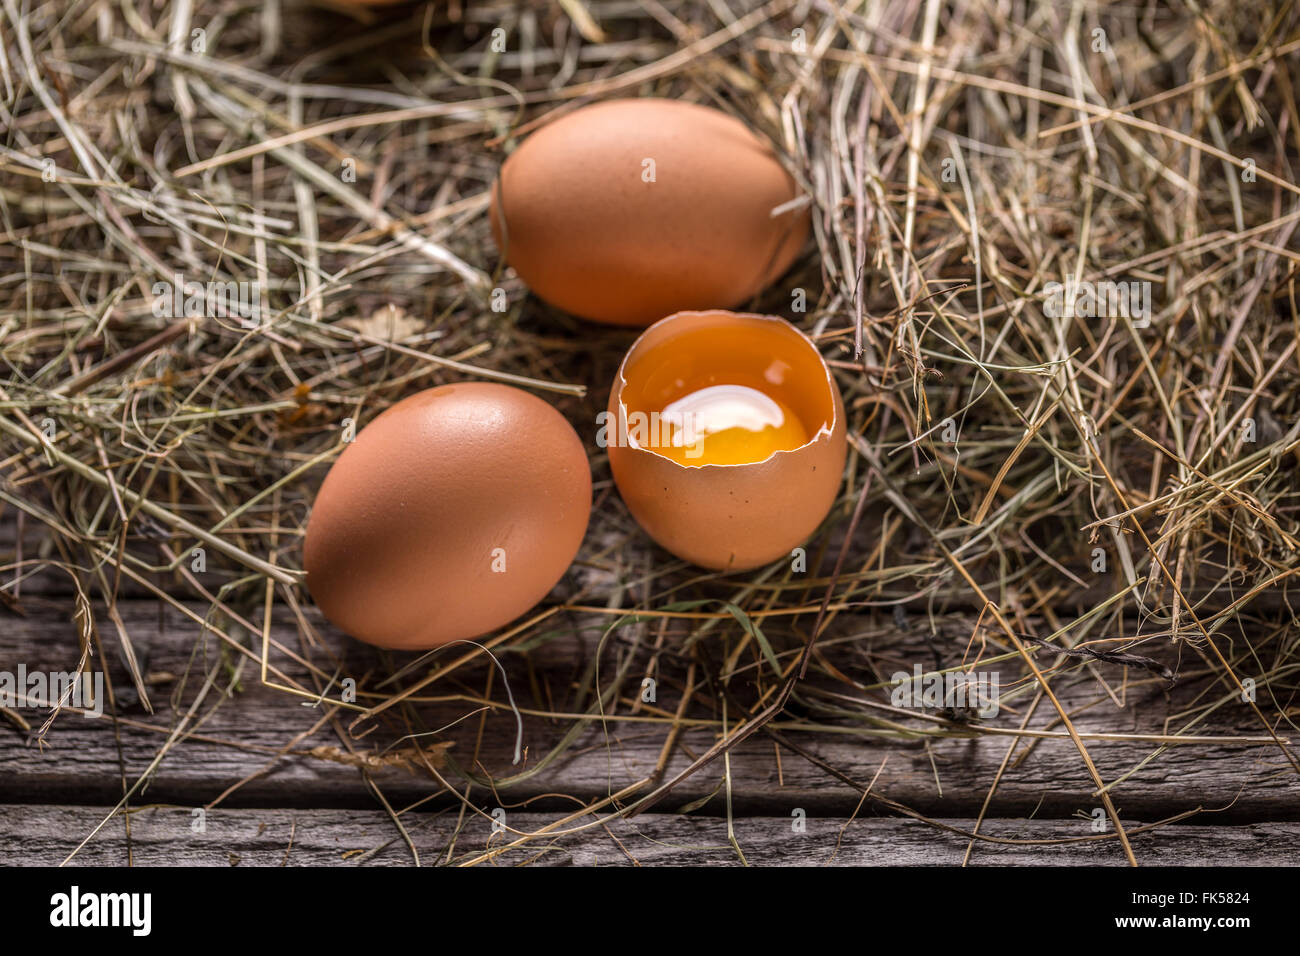 Los huevos de gallina marrón sobre fondo de estilo rústico Foto de stock